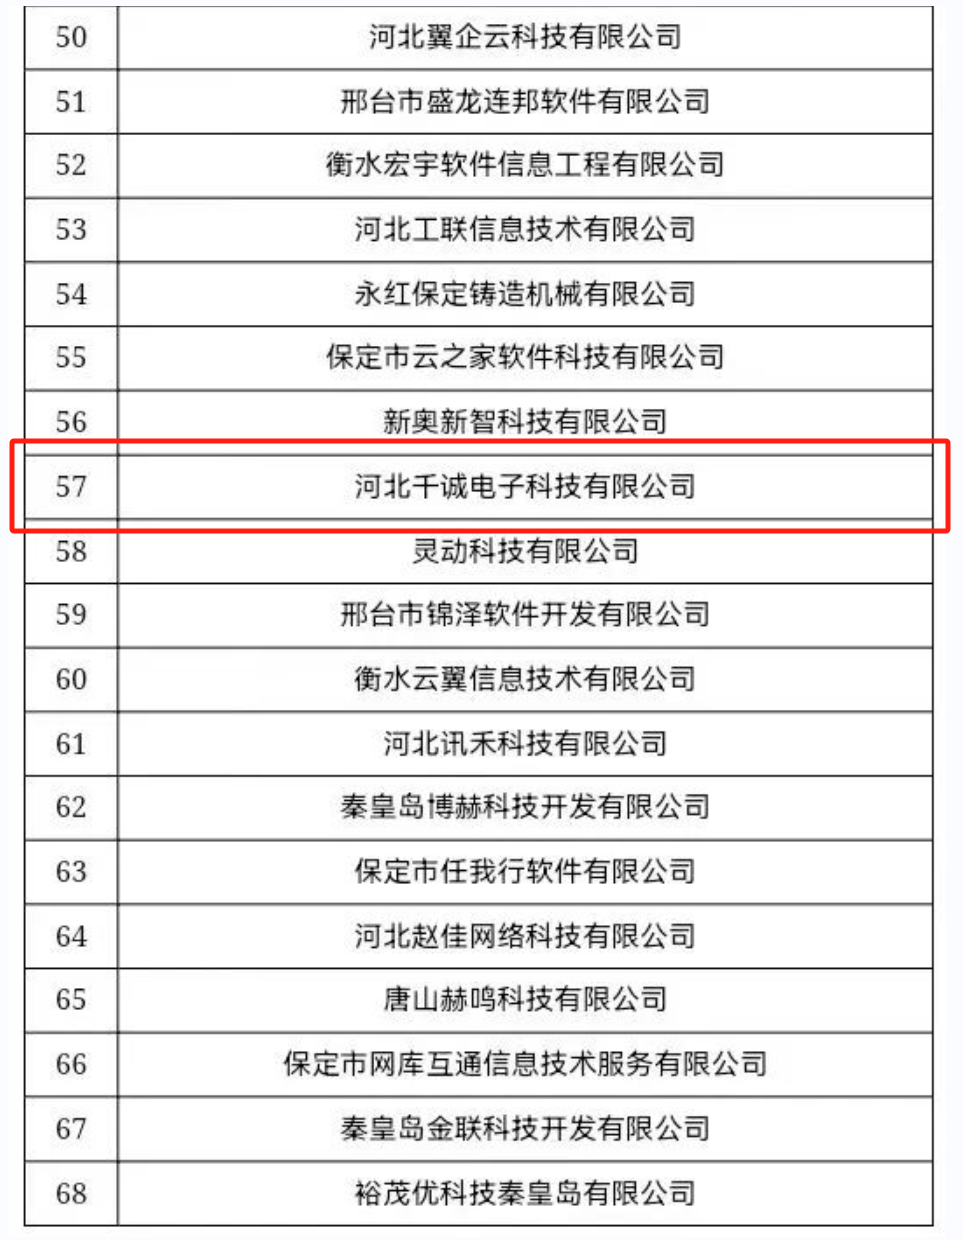 祝贺 | 太阳VIP城贵宾会下载成功入选“河北省企业上云供给资源池服务商名单”